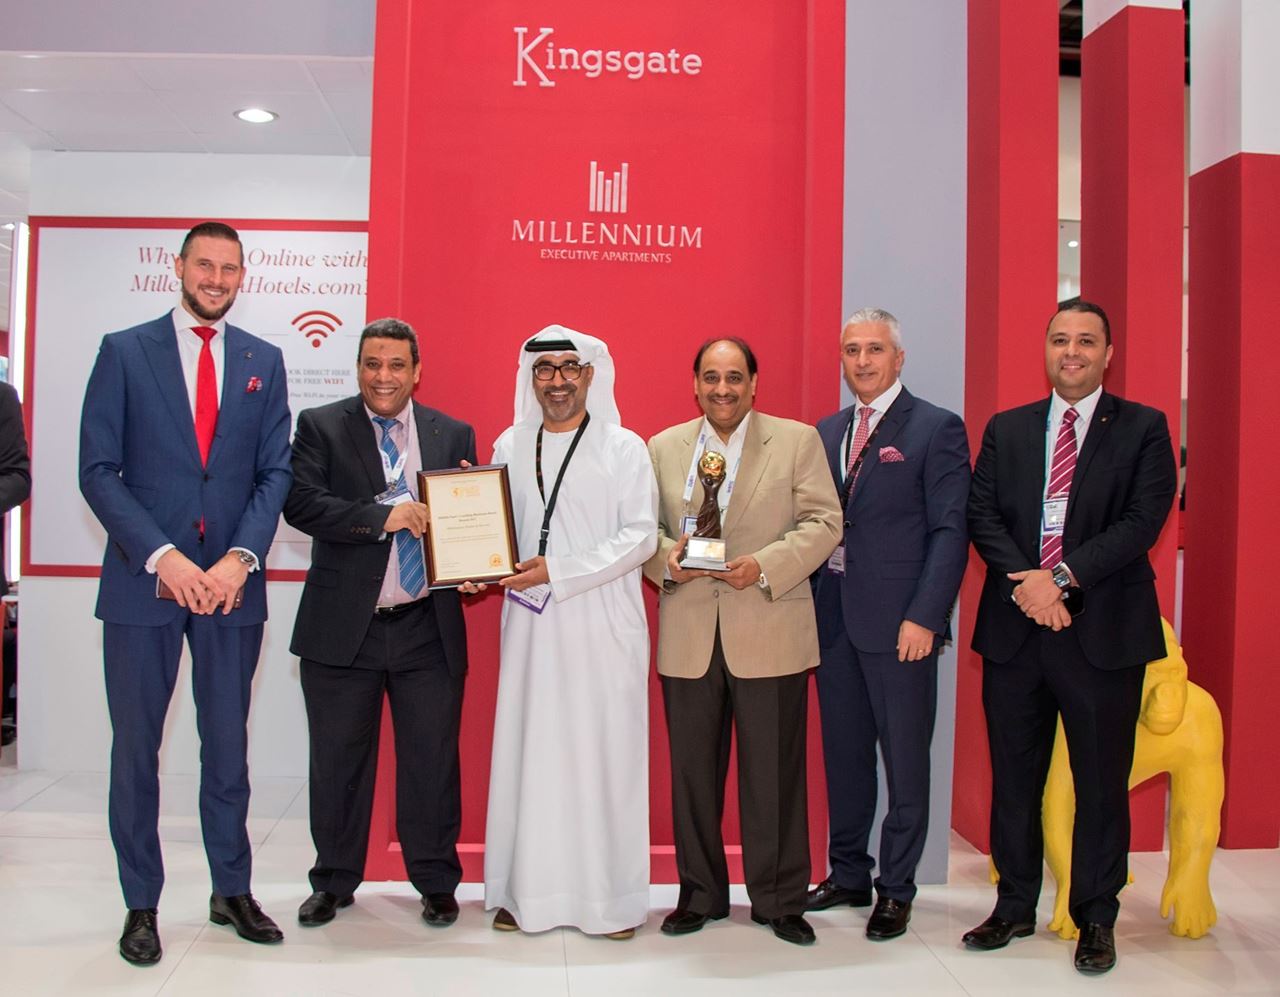 فندق وأبراج مكة ميلينيوم تفوز بجائزة "الفندق الرائد في مكة لعام 2018" في حفل جوائز السفر العالمية